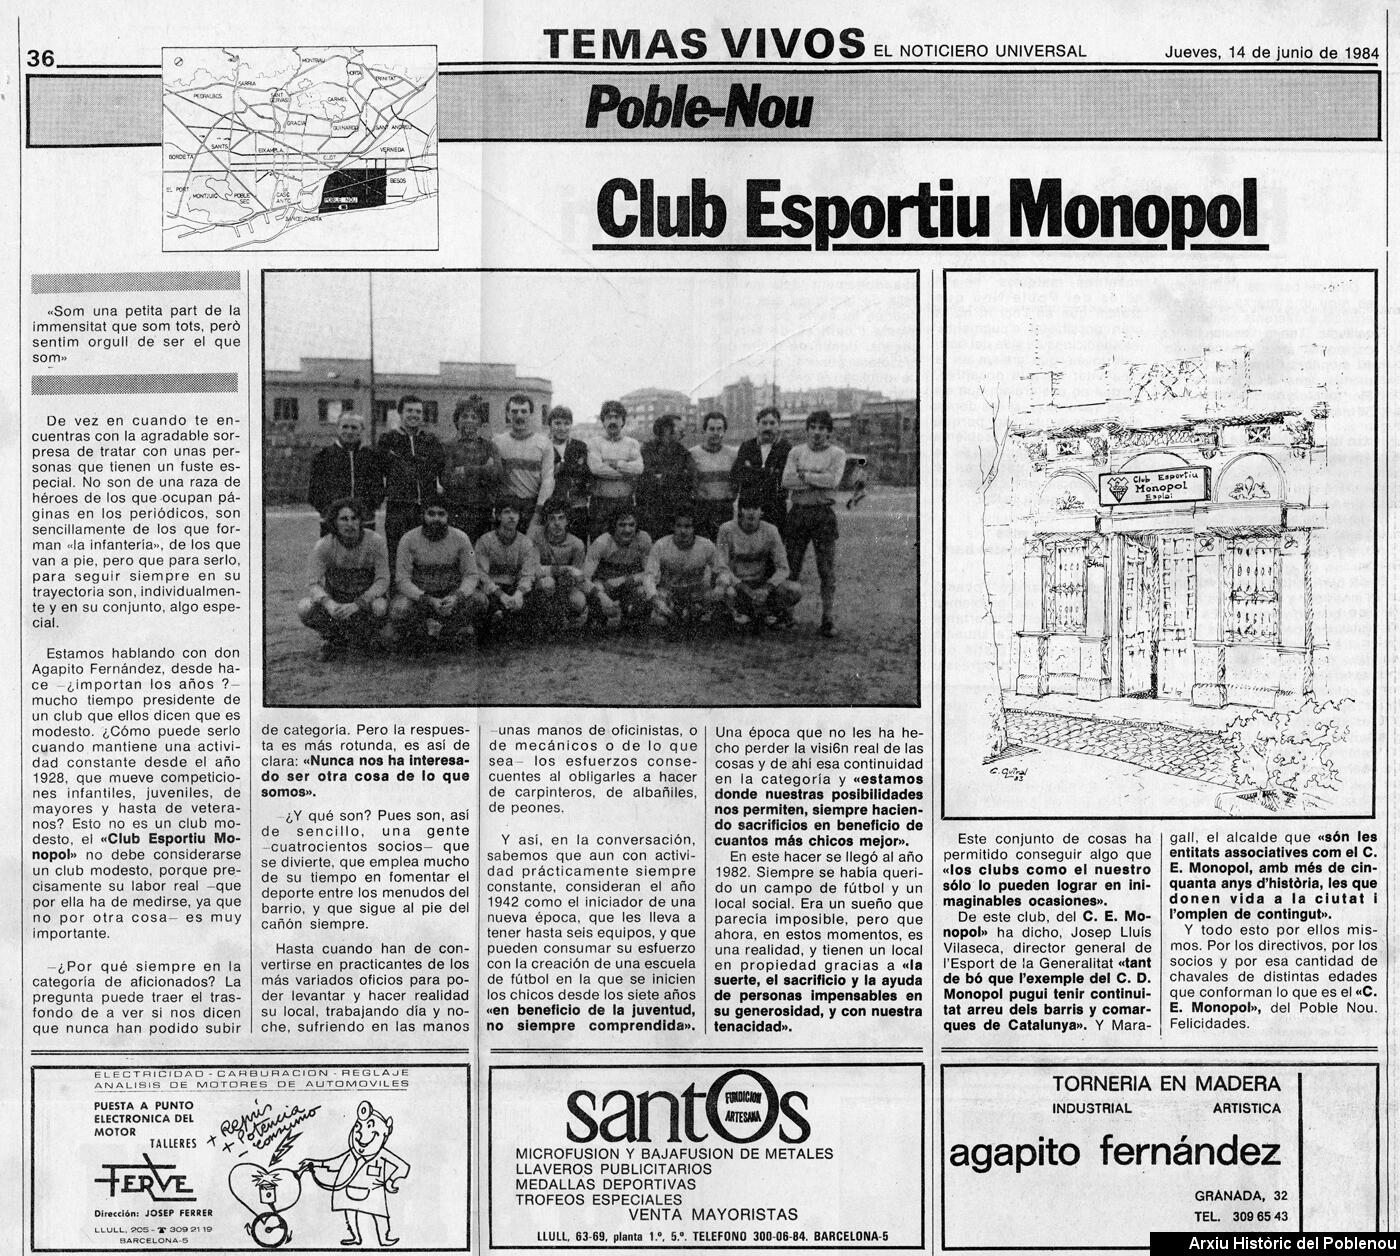 22536 Club Esportiu Monopol 1984